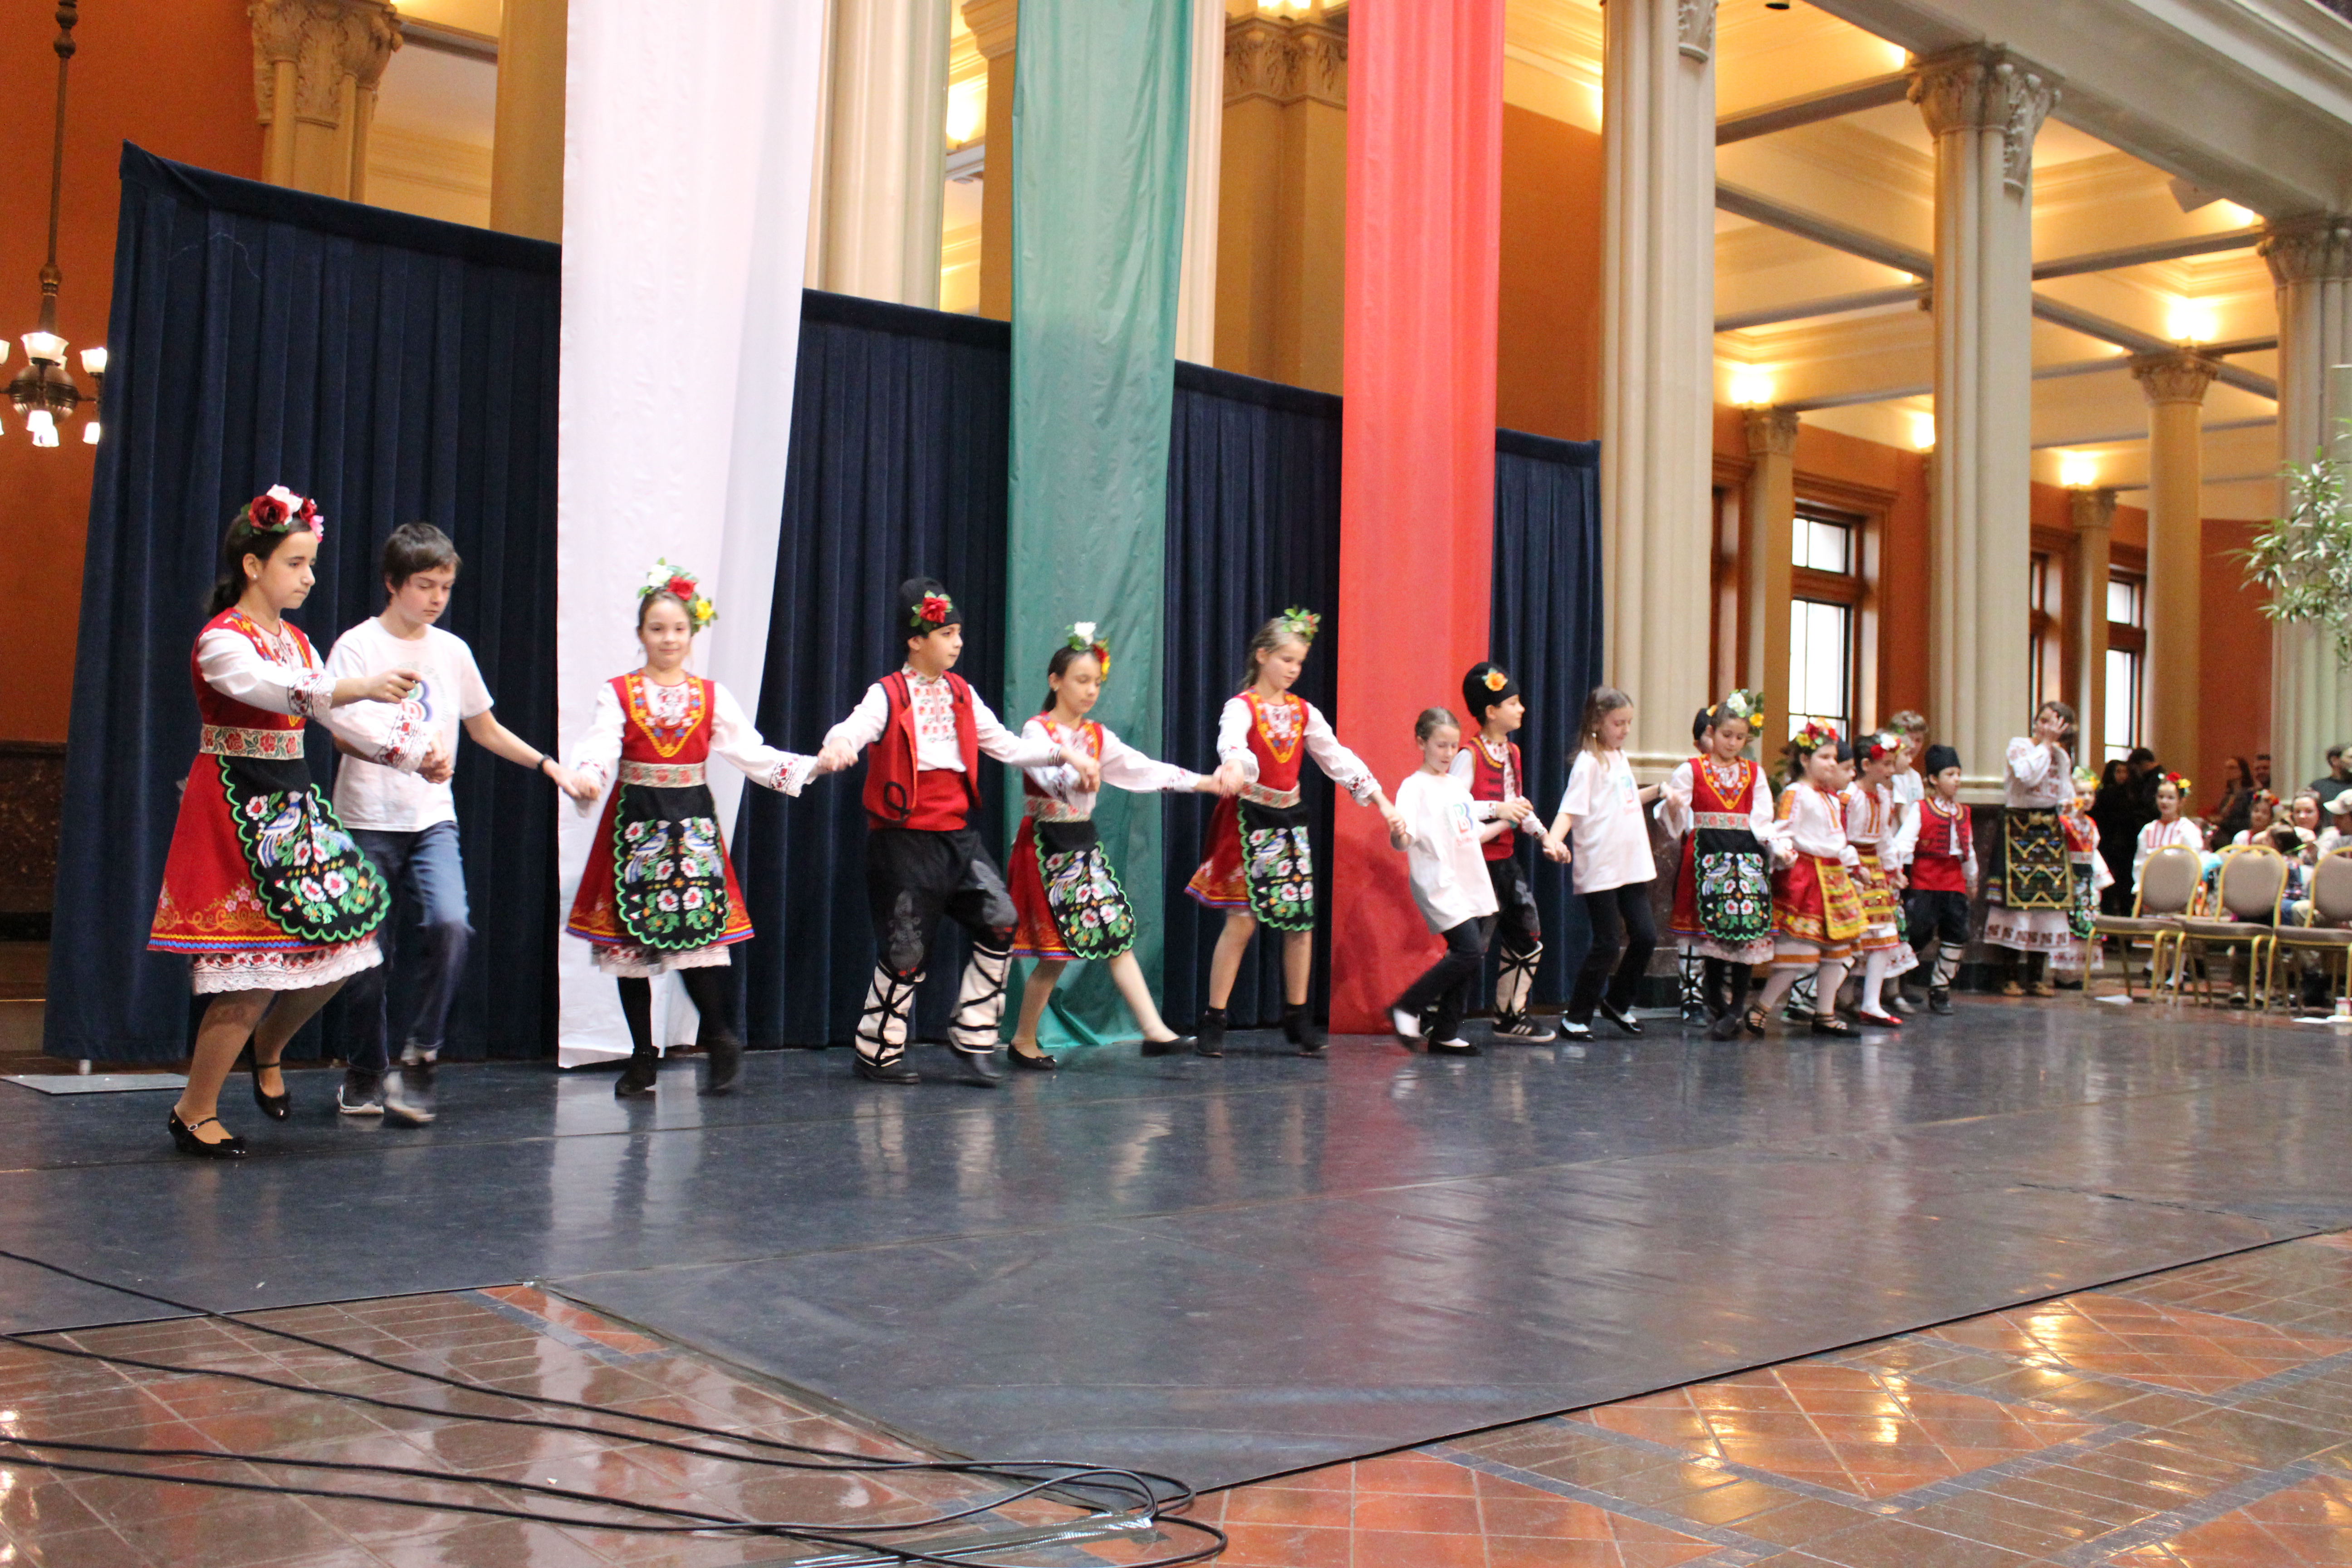 Bulgarian dancing